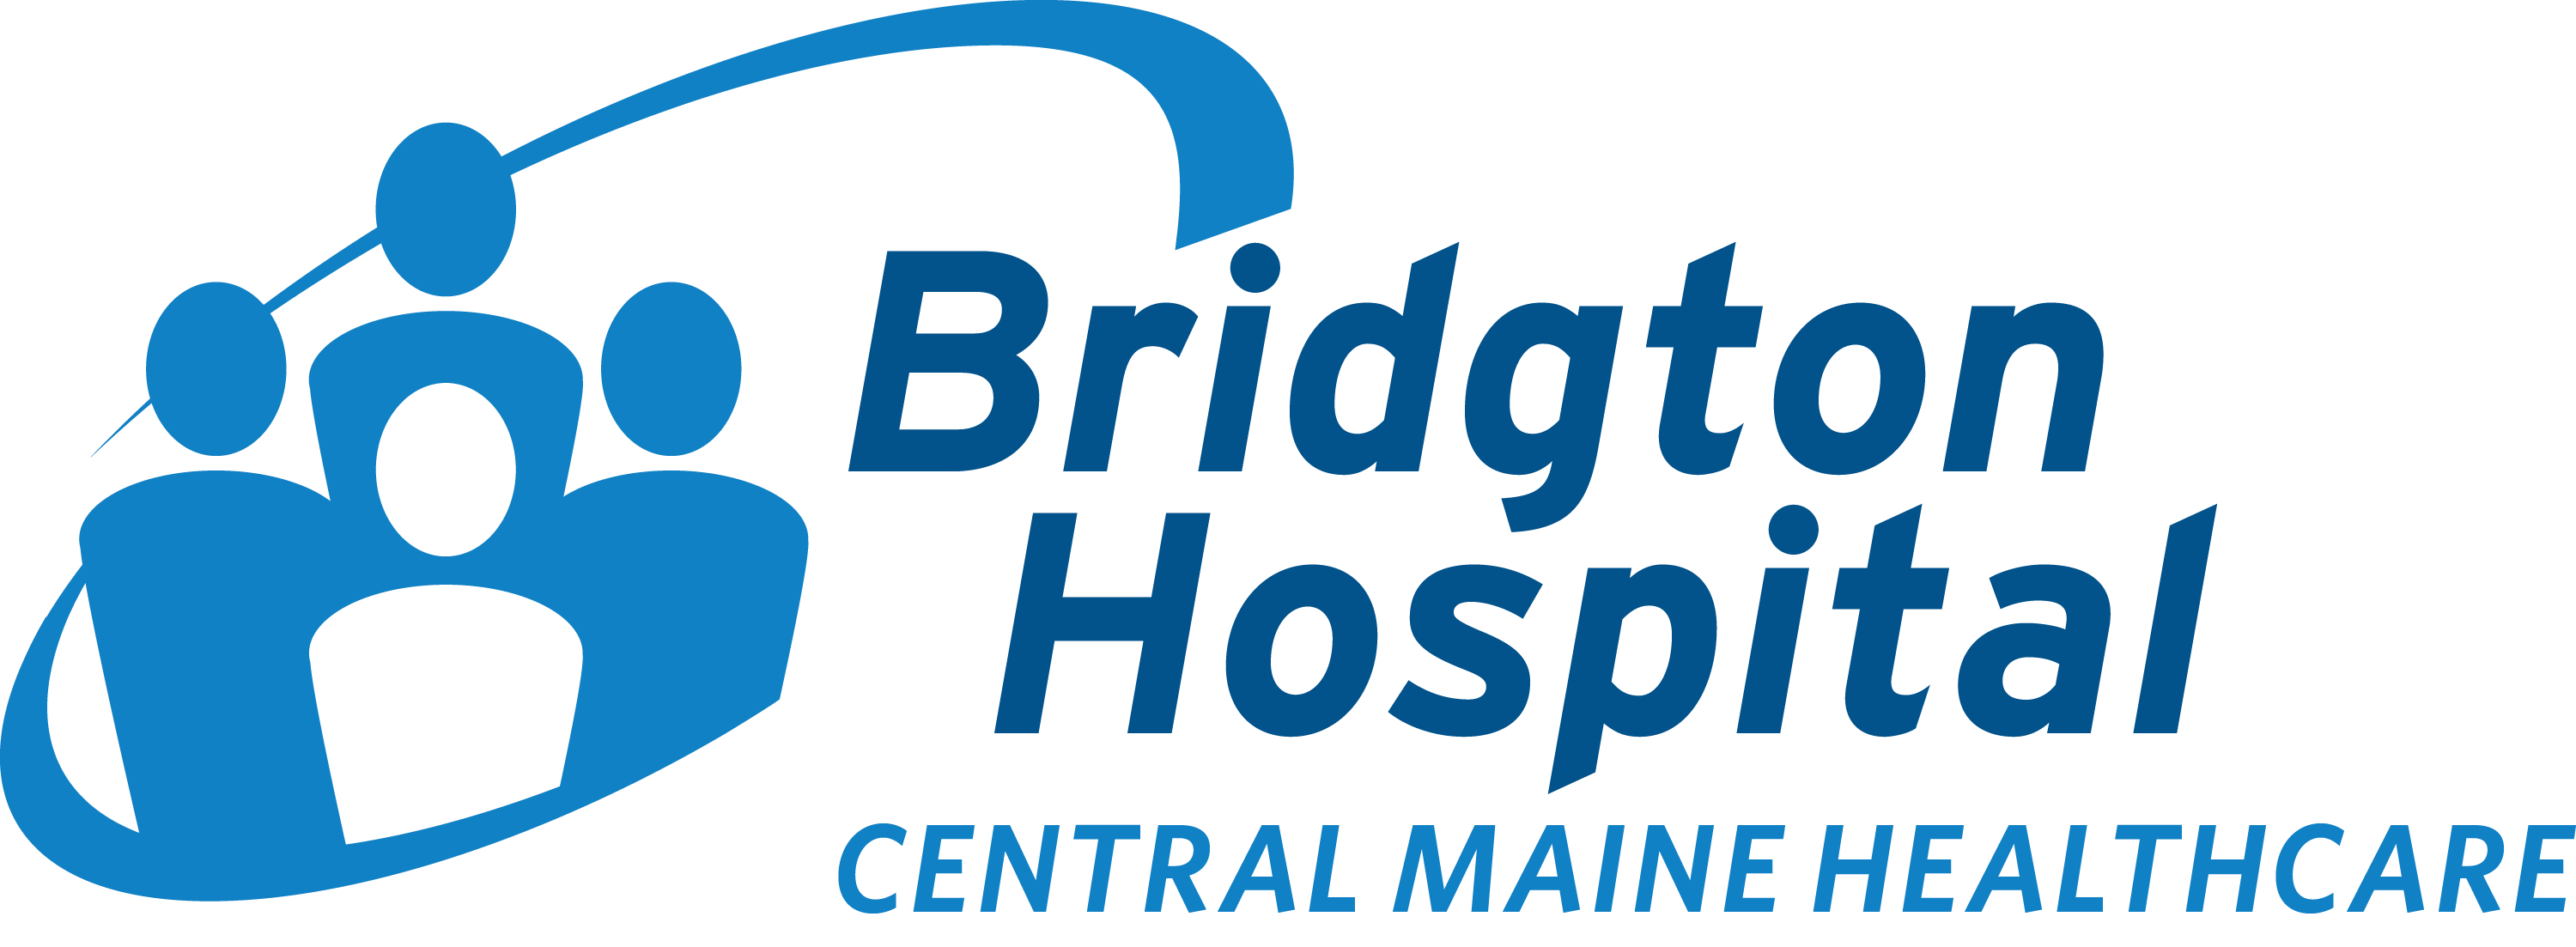 Bridgton Hospital